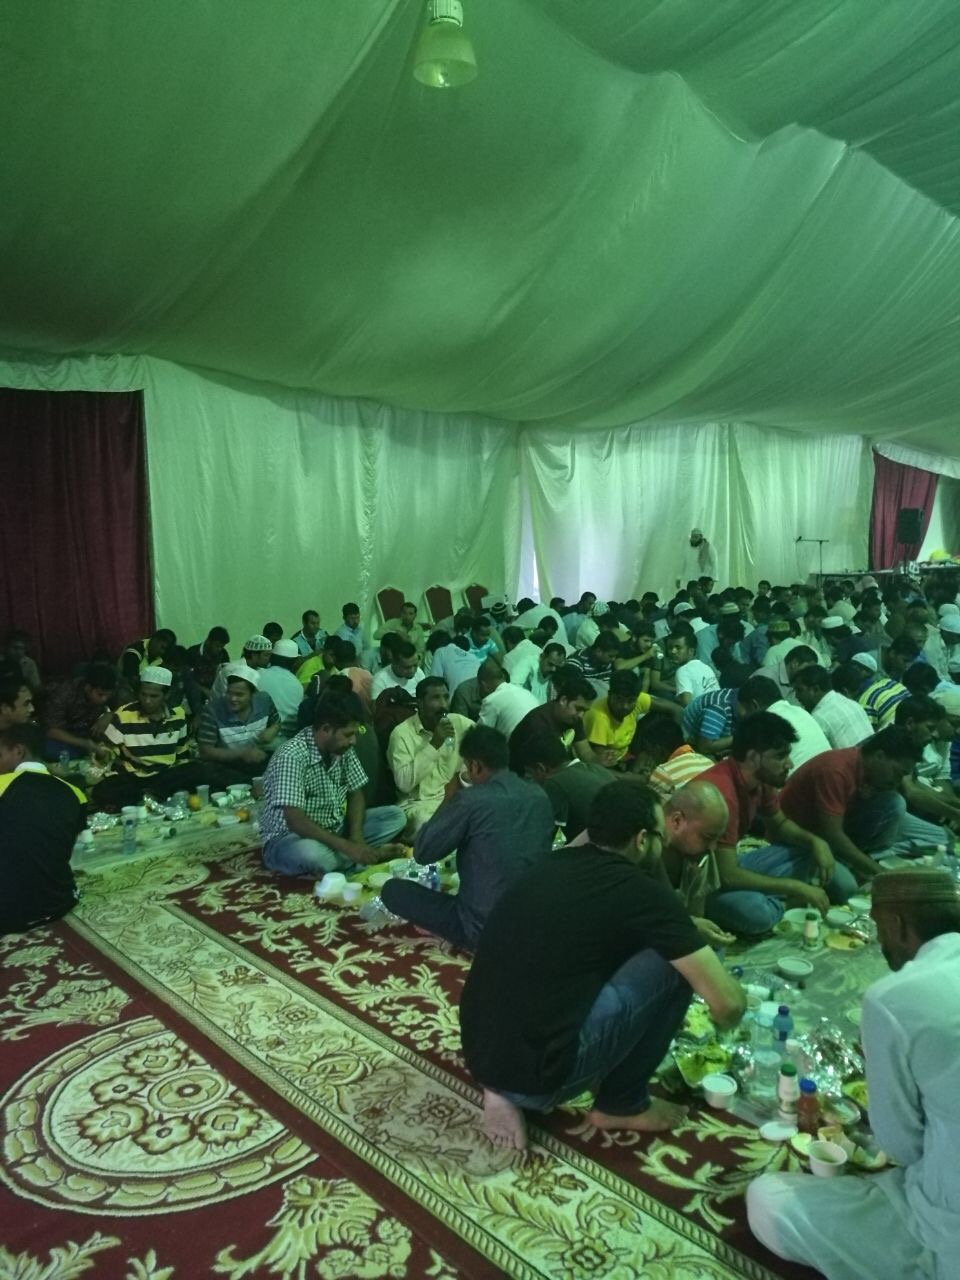 شملت 800 صائم في يوم التدشين.. افتتاح أضخم خيمة إفطار في المجاردة - المواطن